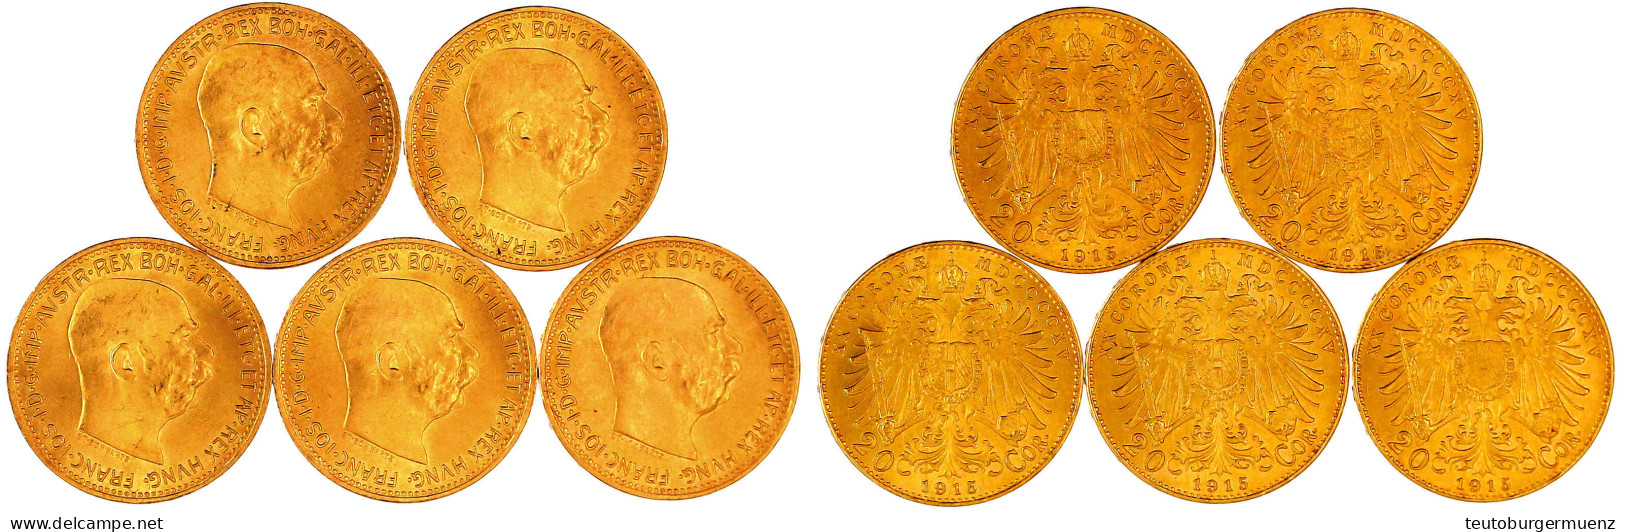 5 X 20 Kronen 1915, Offizielle NP. Je 6,78 G. 900/1000. Alle Prägefrisch/Stempelglanz. Herinek 350 (5). - Monedas En Oro